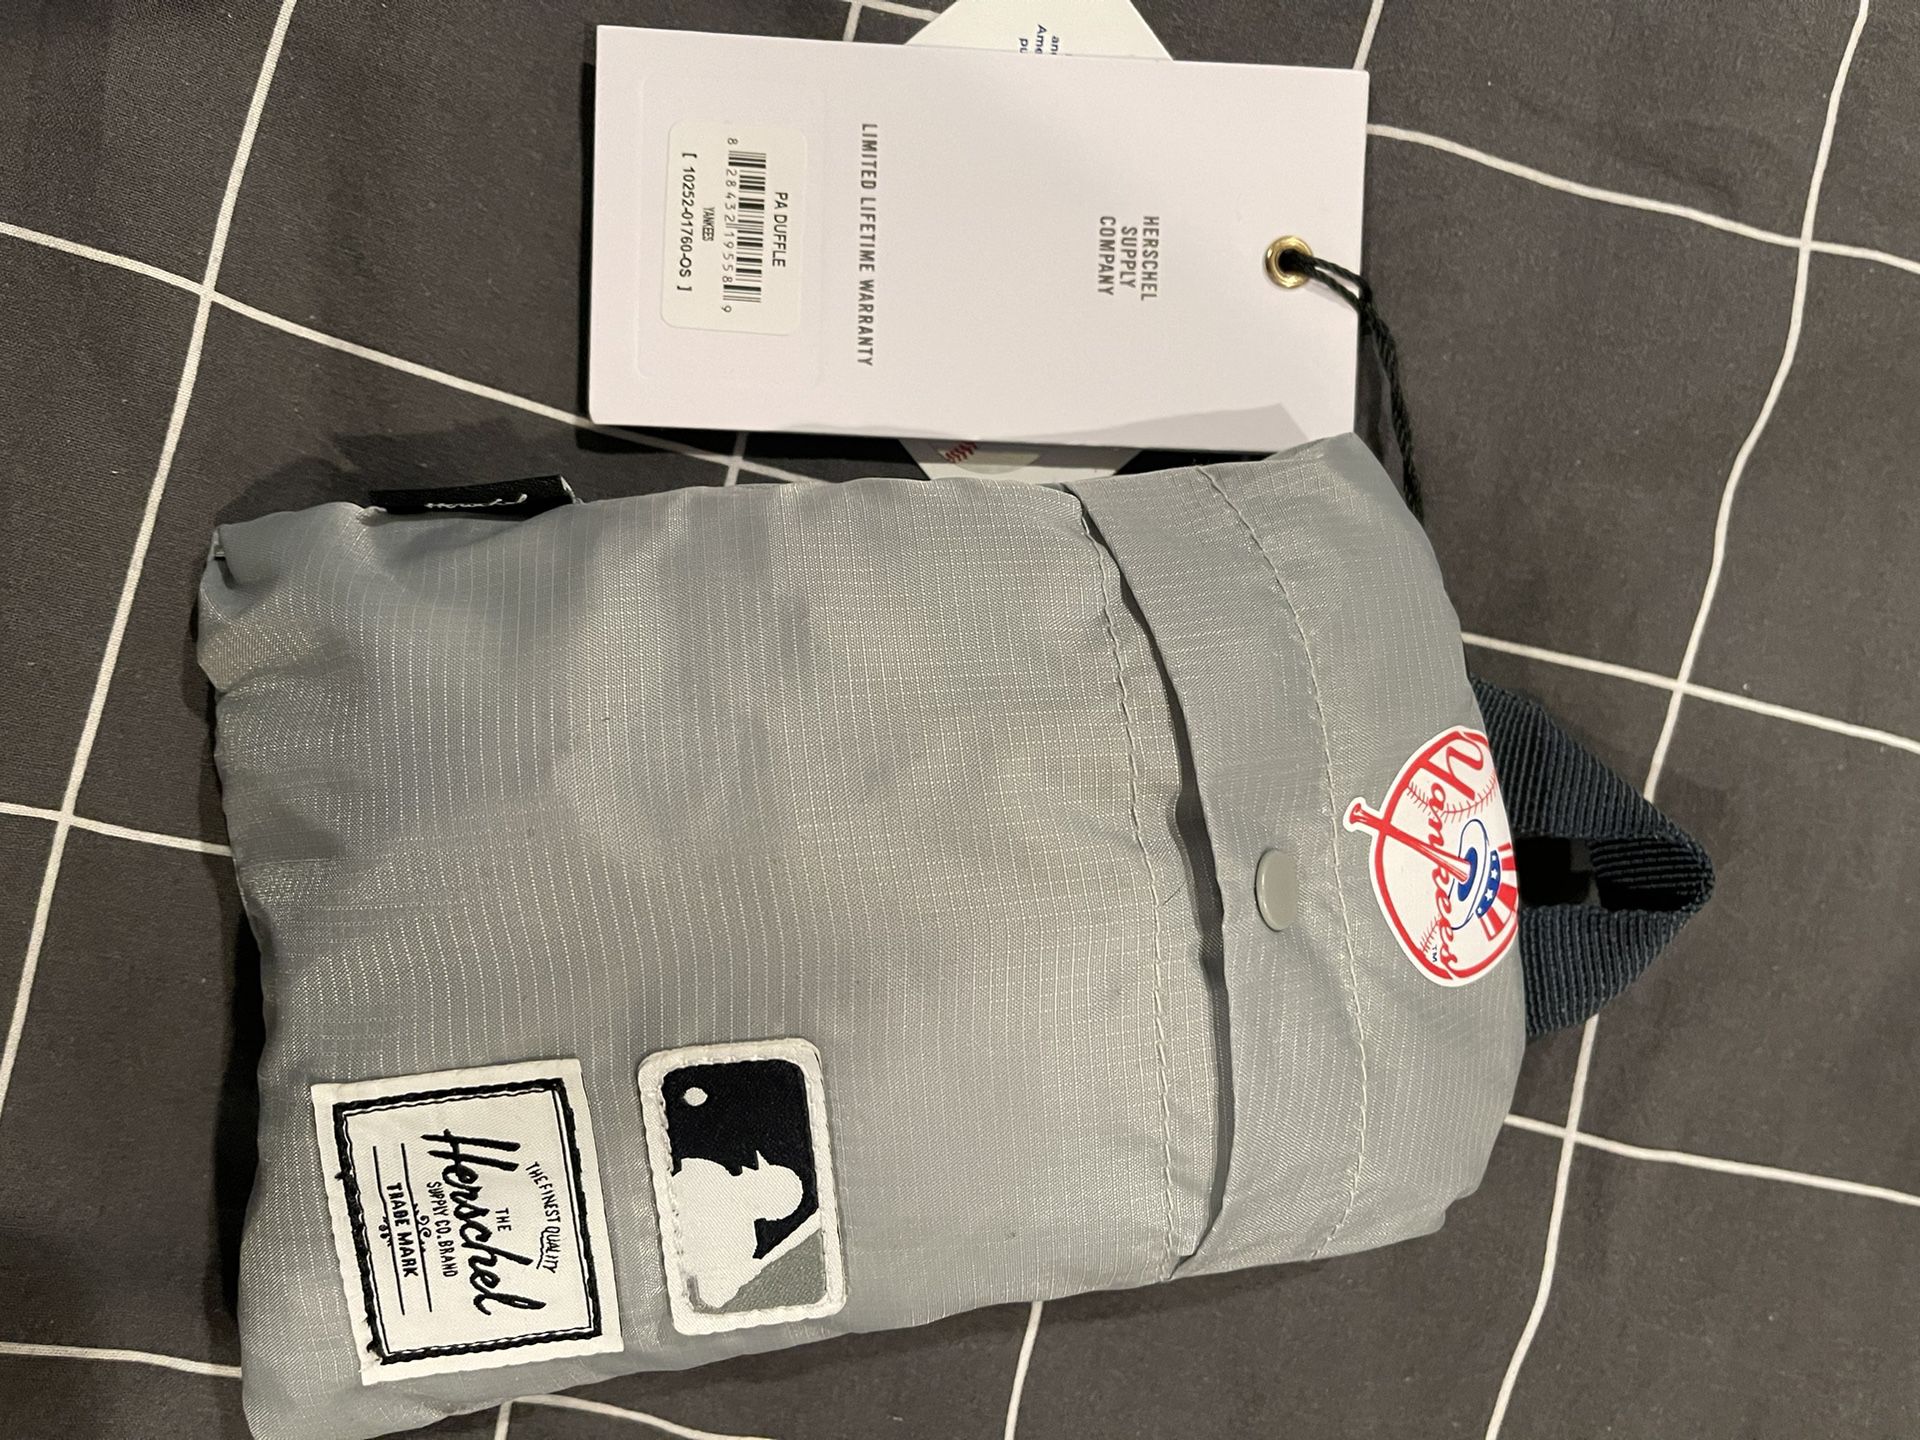 Hershel Packable Duffle Bag